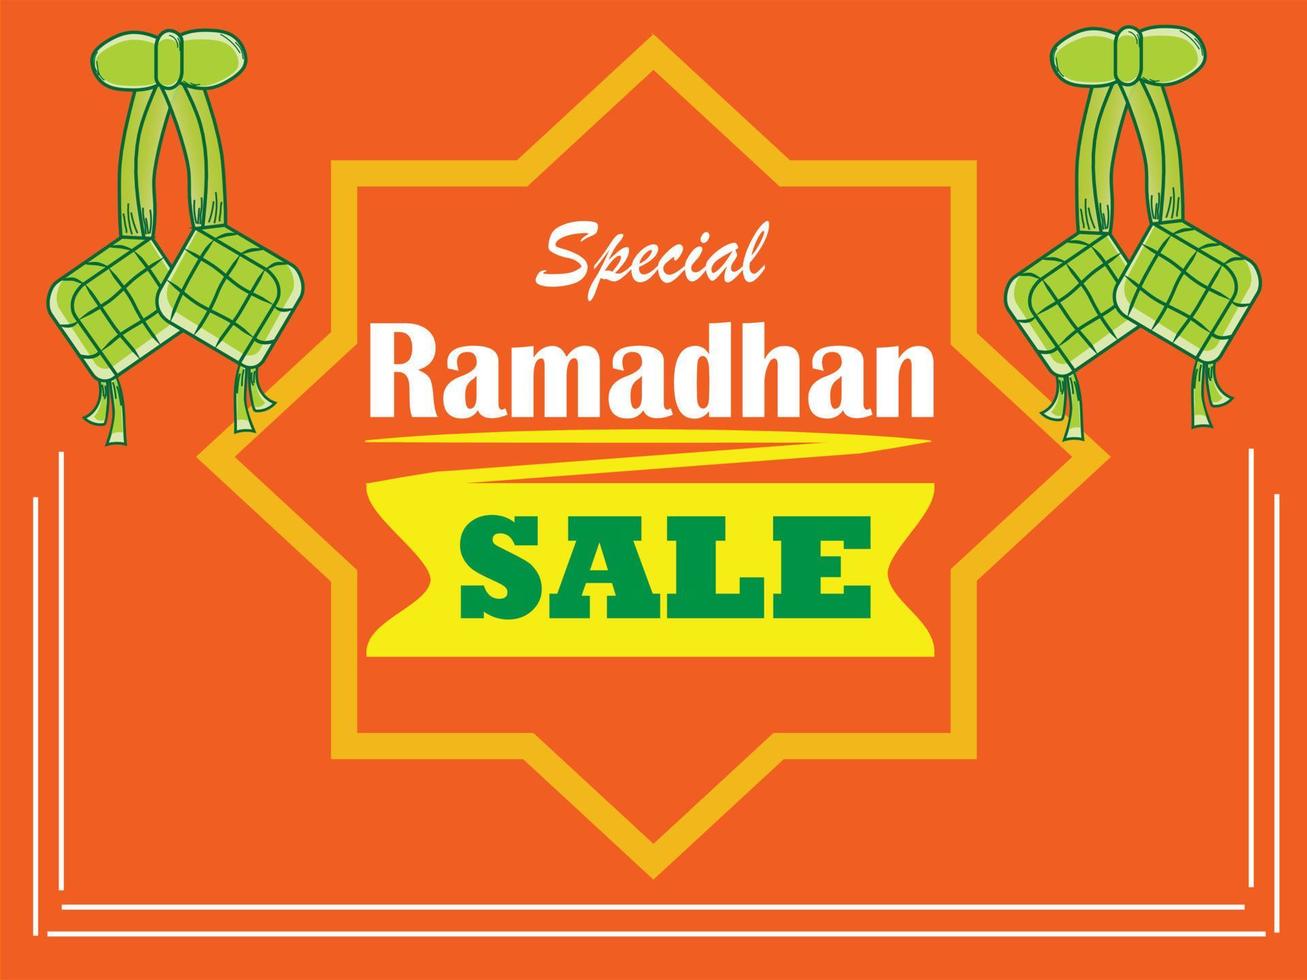 conception de promotion de modèle de bannière de vente ramadan avec couleur orange, adaptée à la promotion web et aux médias sociaux, illustration vectorielle. vecteur